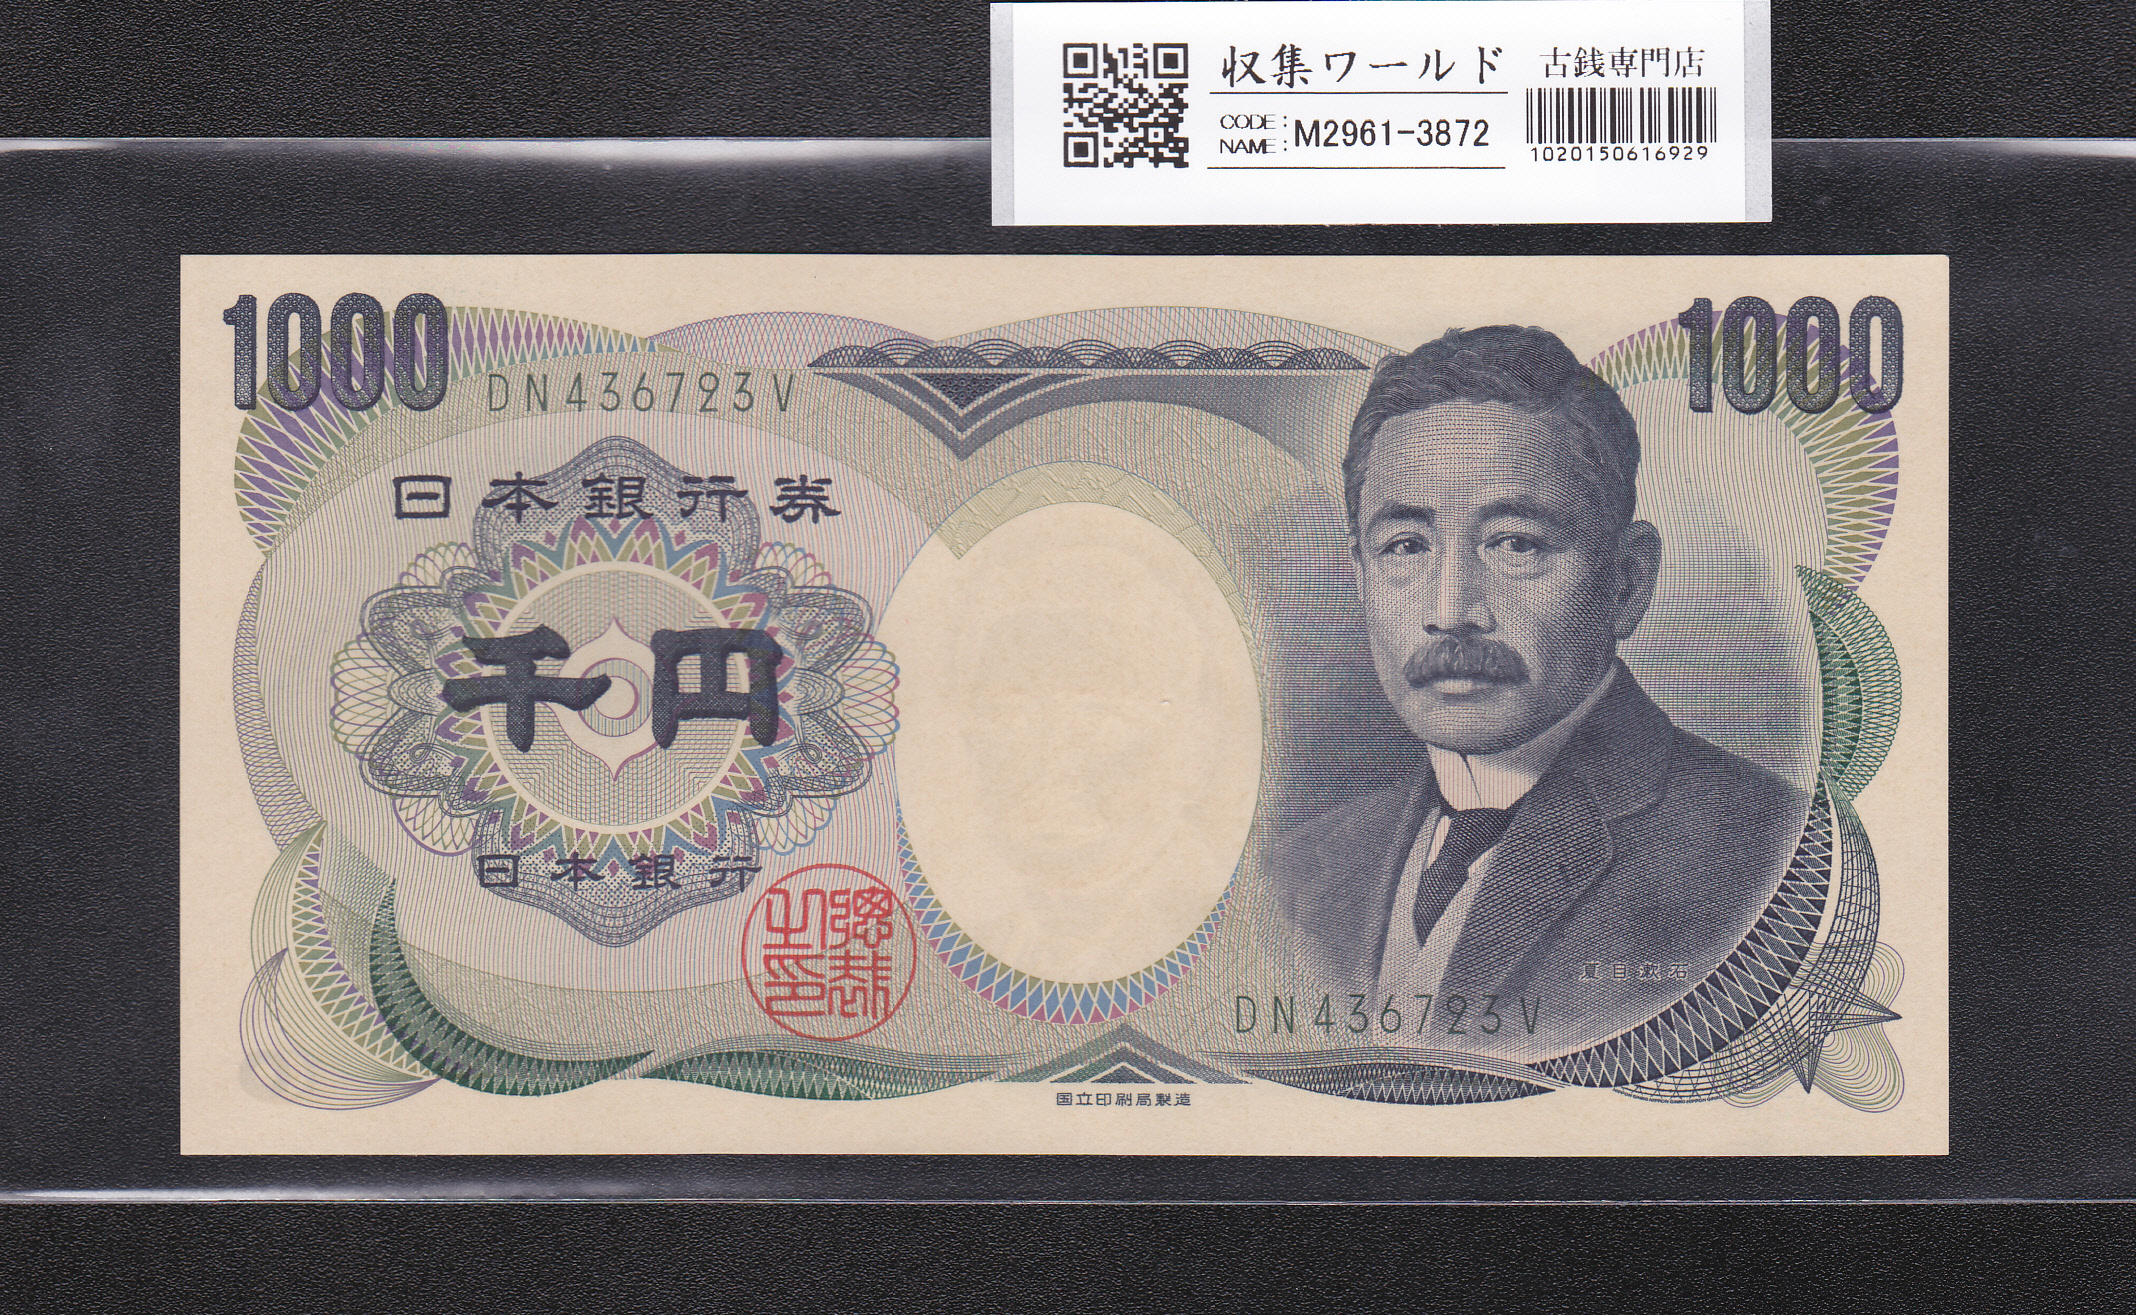 夏目漱石 1000円札/国立銘 2003年 緑色 後期/2桁 DN436723V 未使用